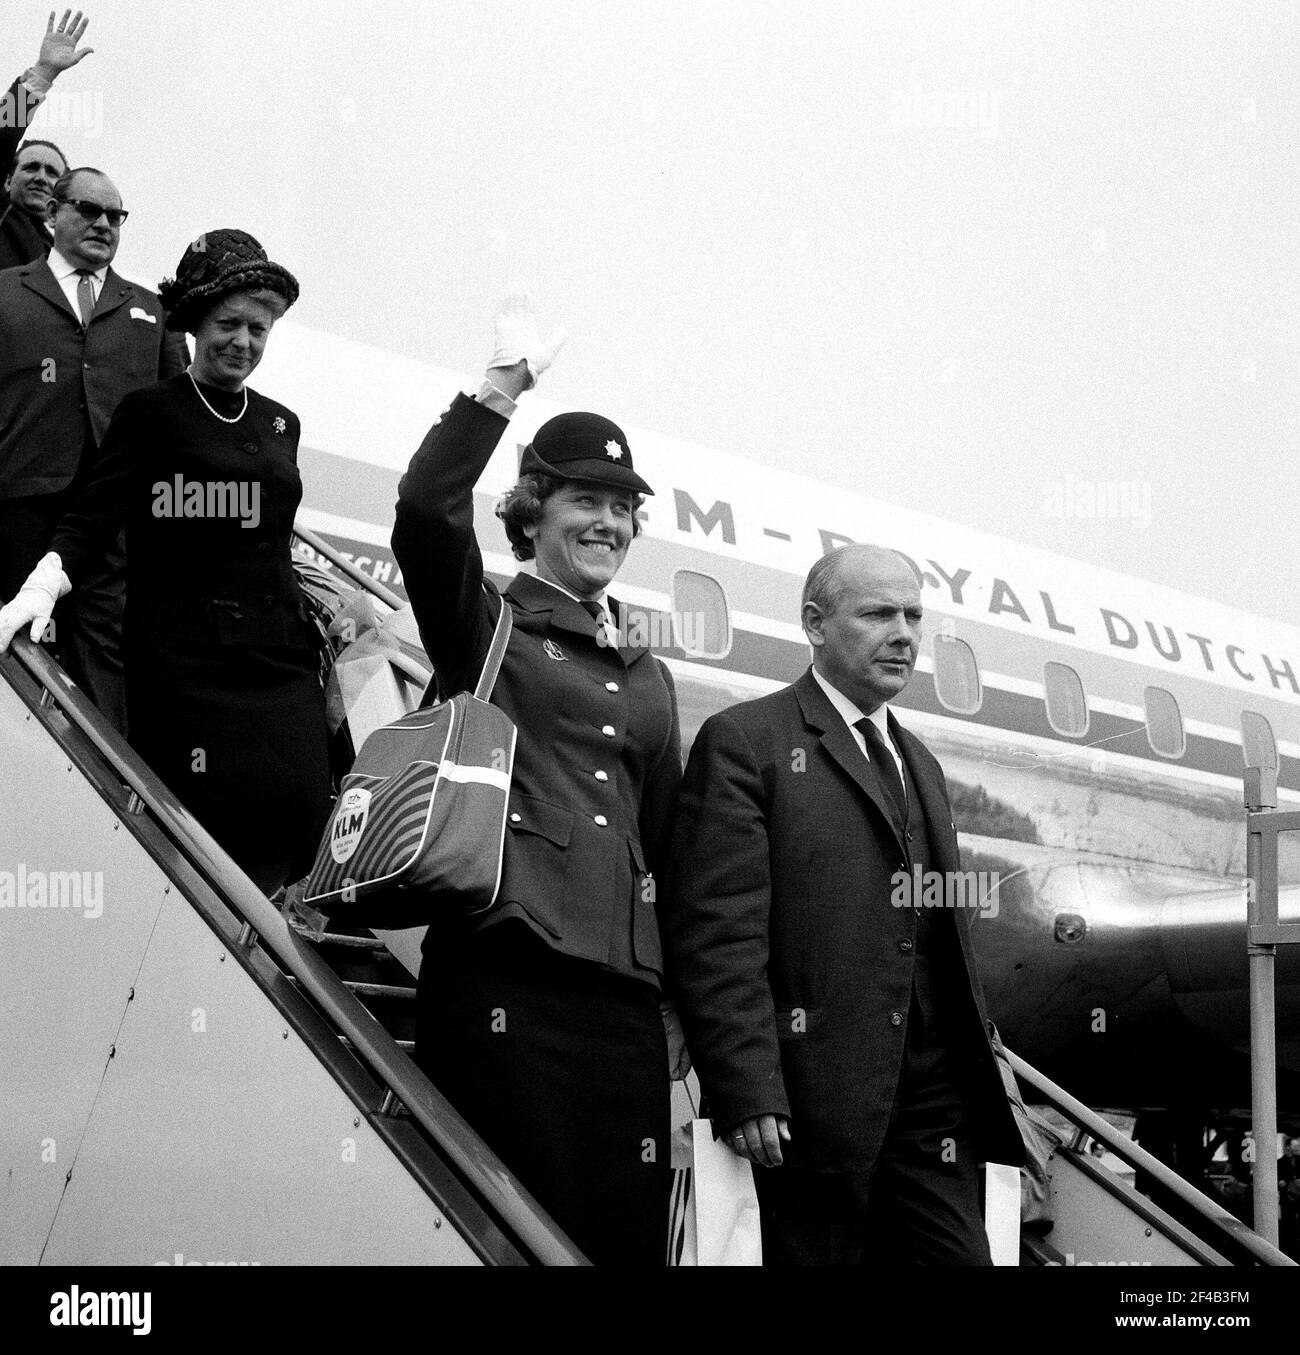 Amsterdam Delegation zurück aus Amerika, die Amsterdamer Polizei Kapelle am Flughafen Schiphol Datum 26. April 1964 Ort anwesend war, Noord-Holland, Schiphol Stockfoto